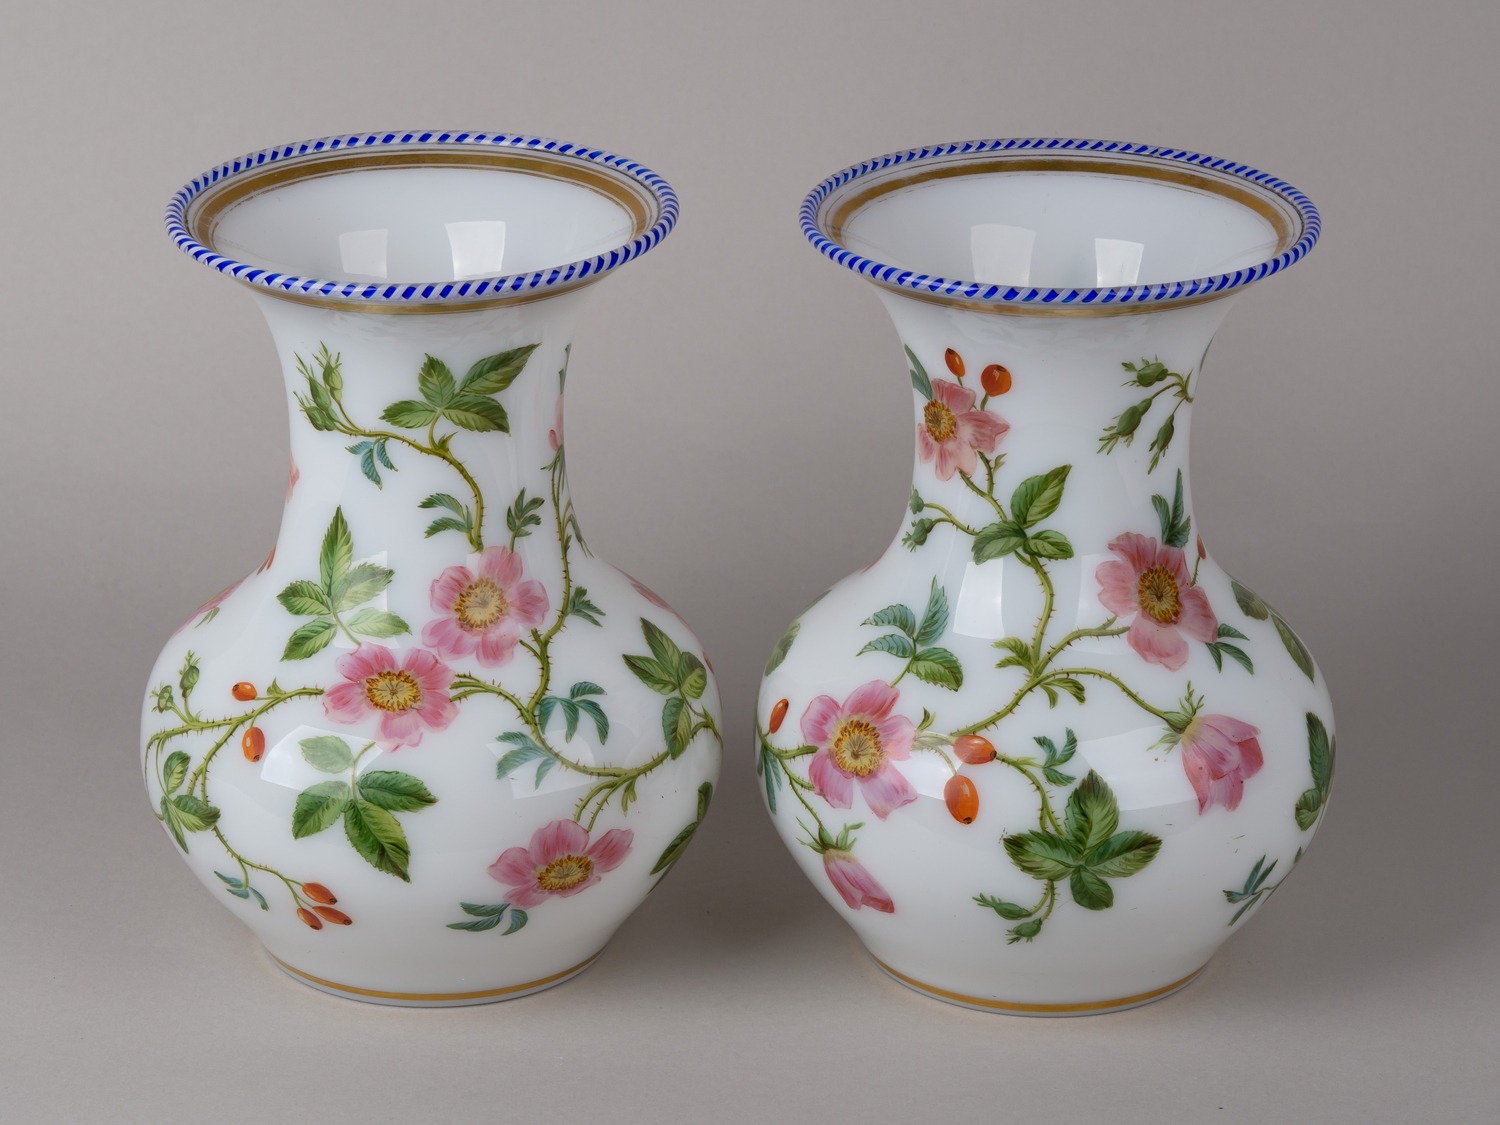 Парные вазы с эмалями «Дикая роза». <br>Франция, фирма Baccarat, мастерская Jean-Francois Robert, начало 1840-х годов.